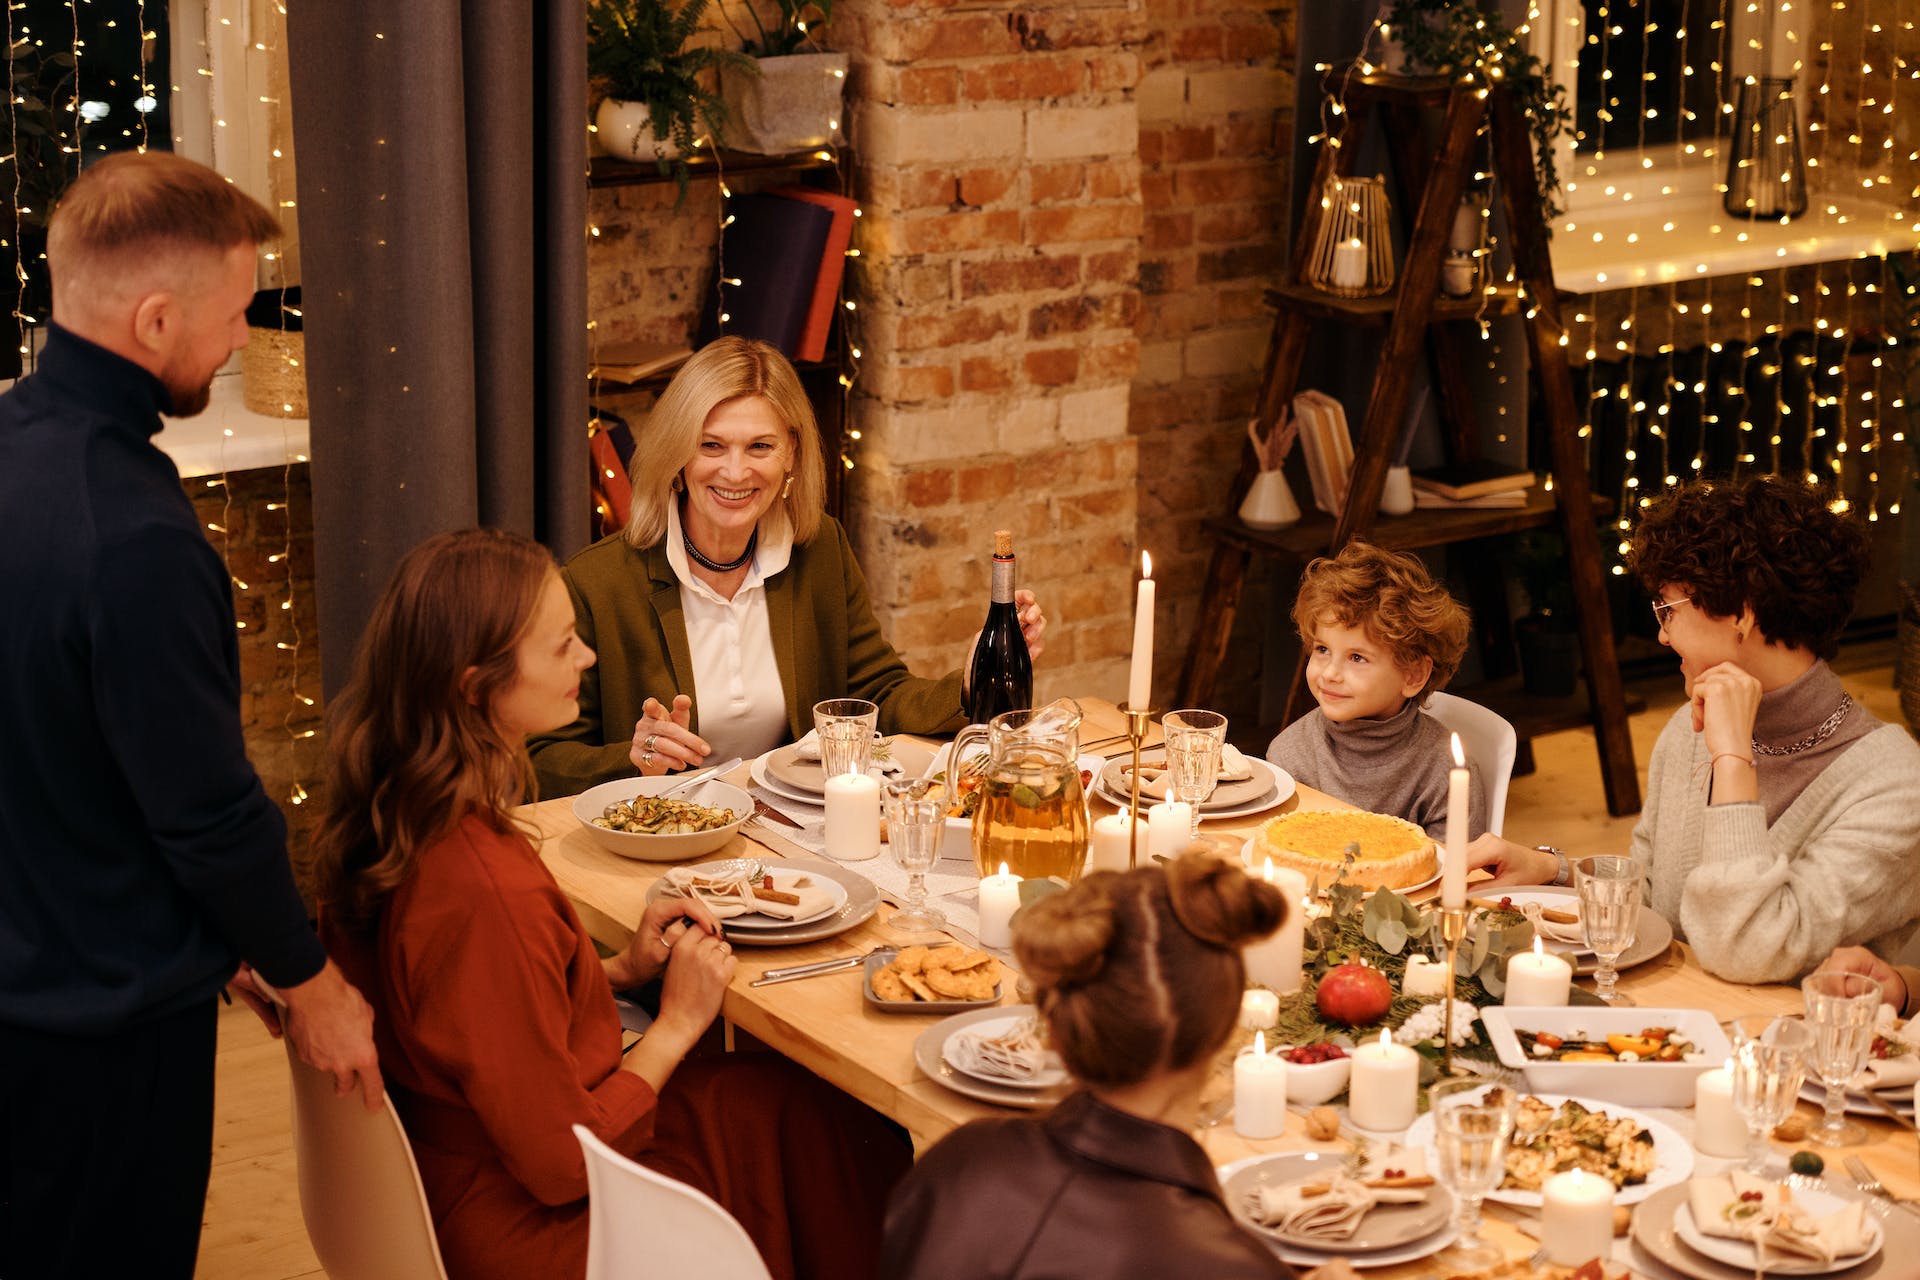 Les membres de la famille réunis pour le repas de Noël | Source : Pexels